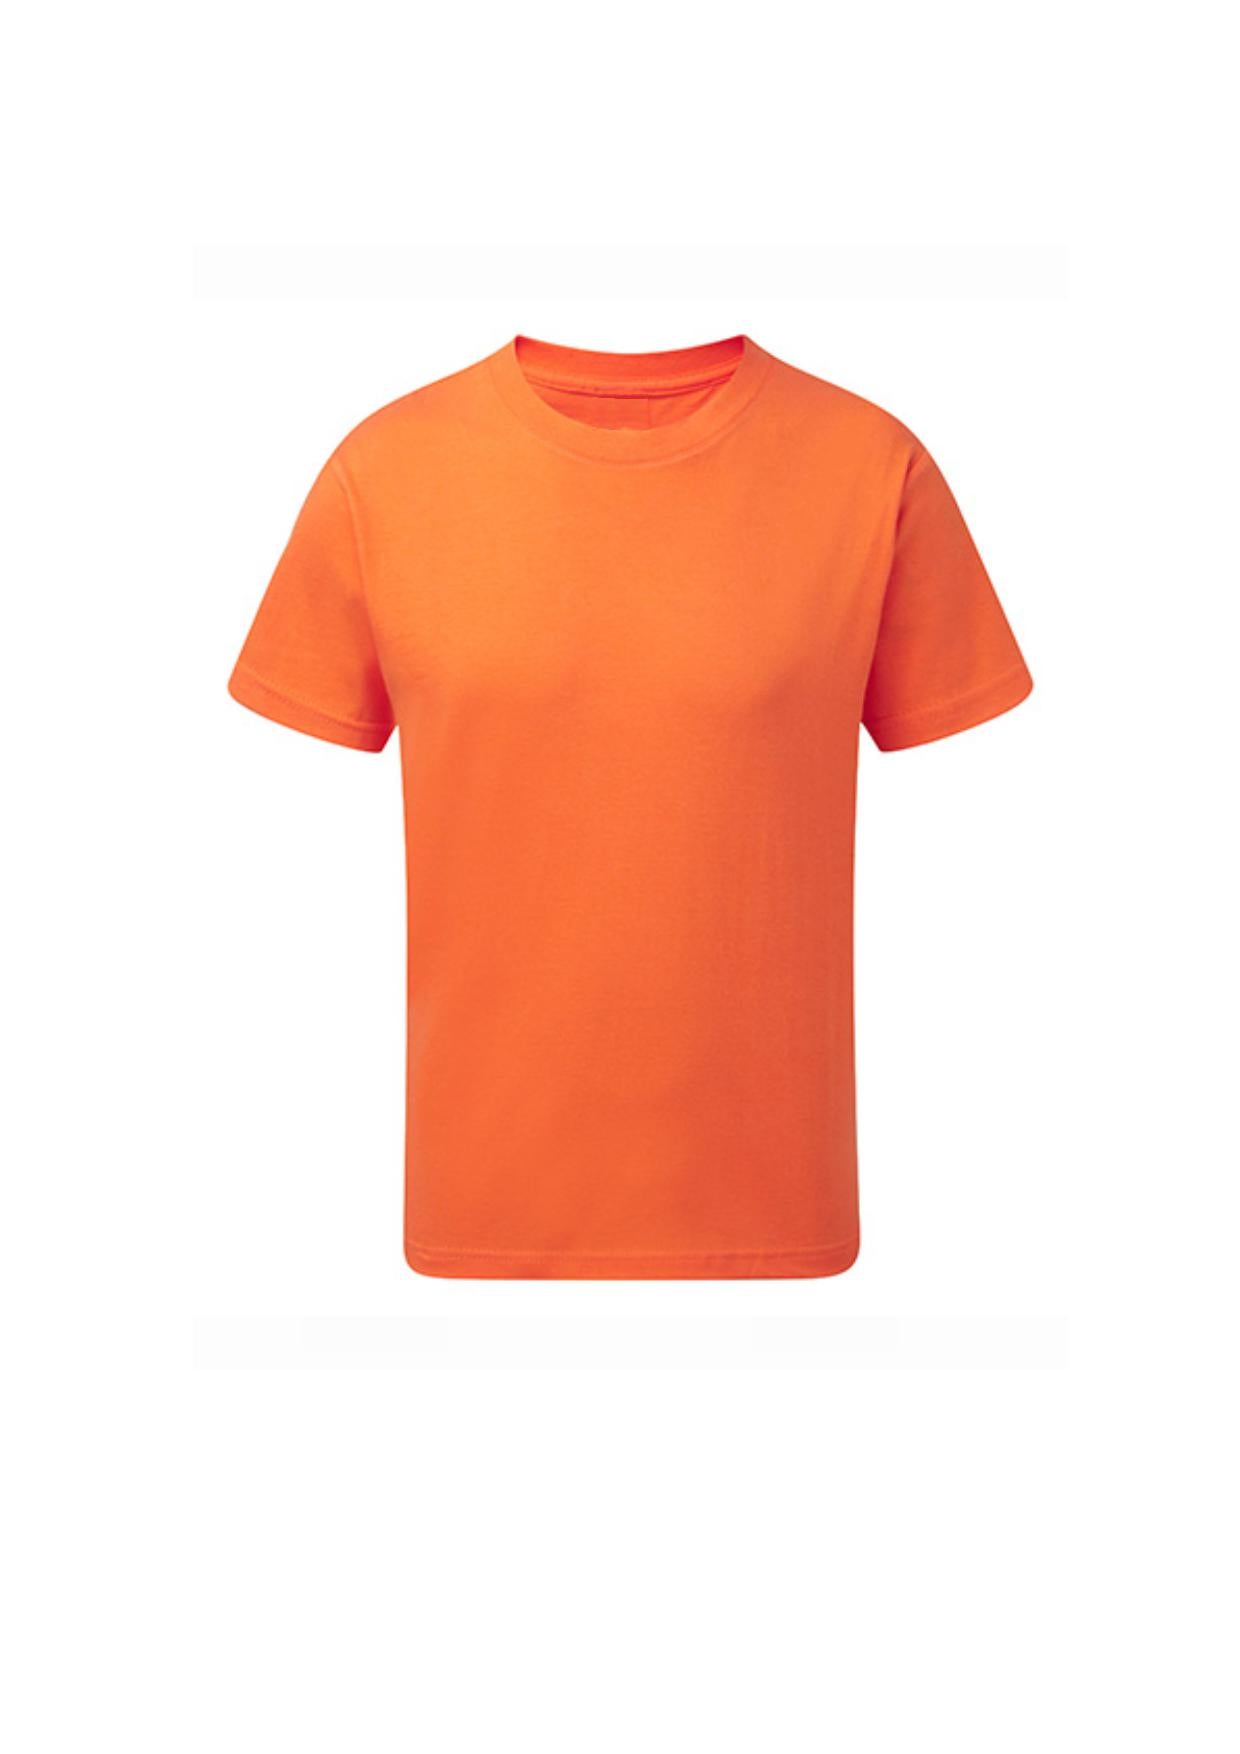 Kinder T-shirt Oranje